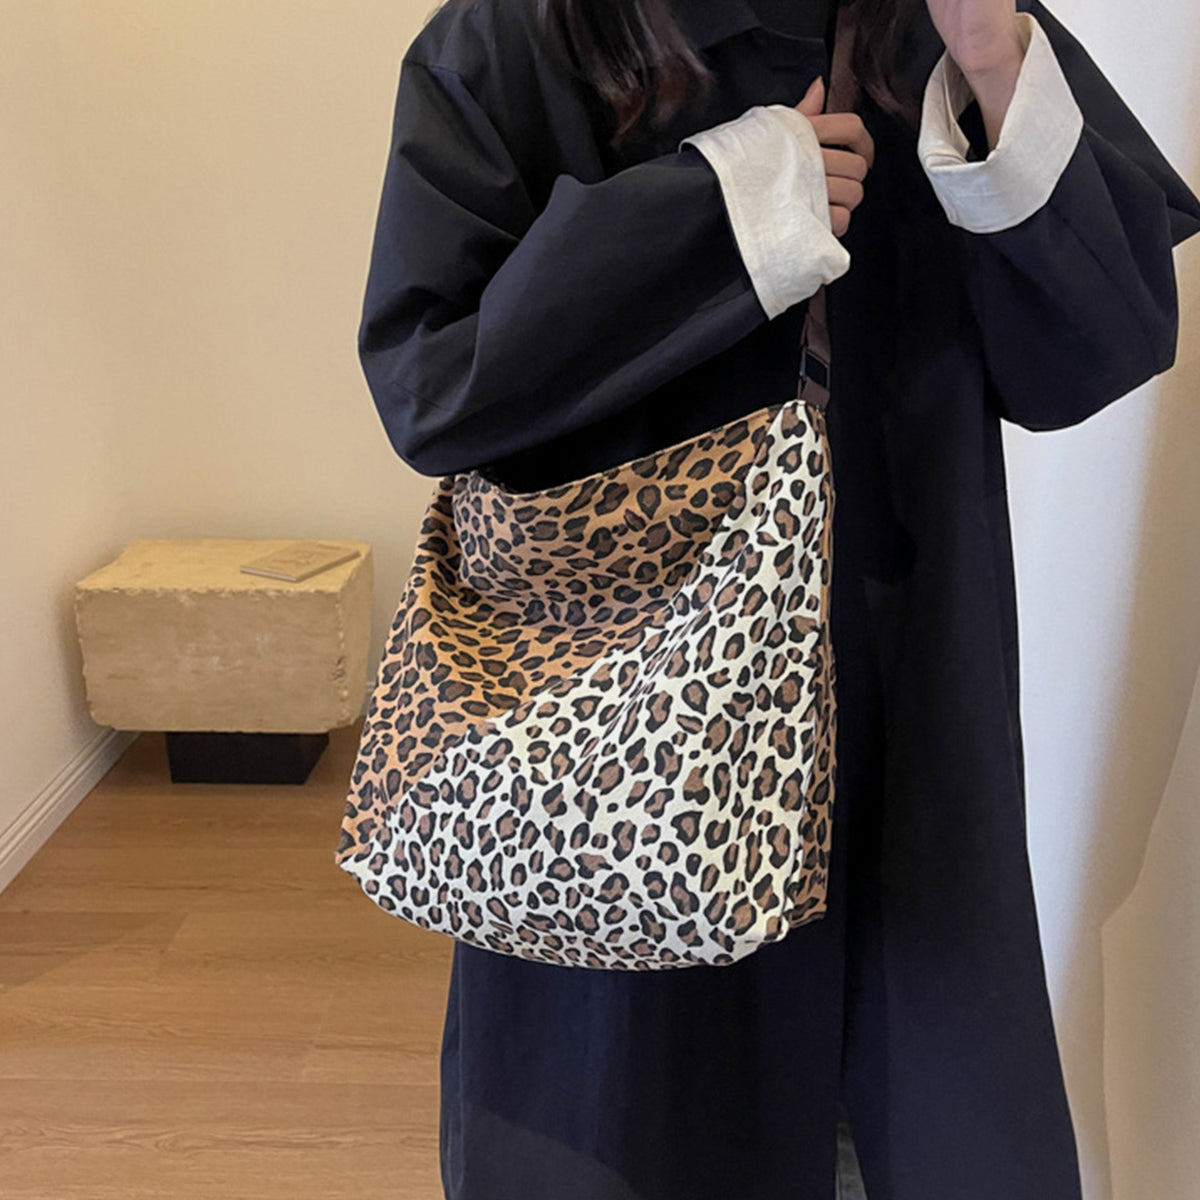 Tote Purse with handle Leopard Contrast Adjustable Strap Shoulder Bag